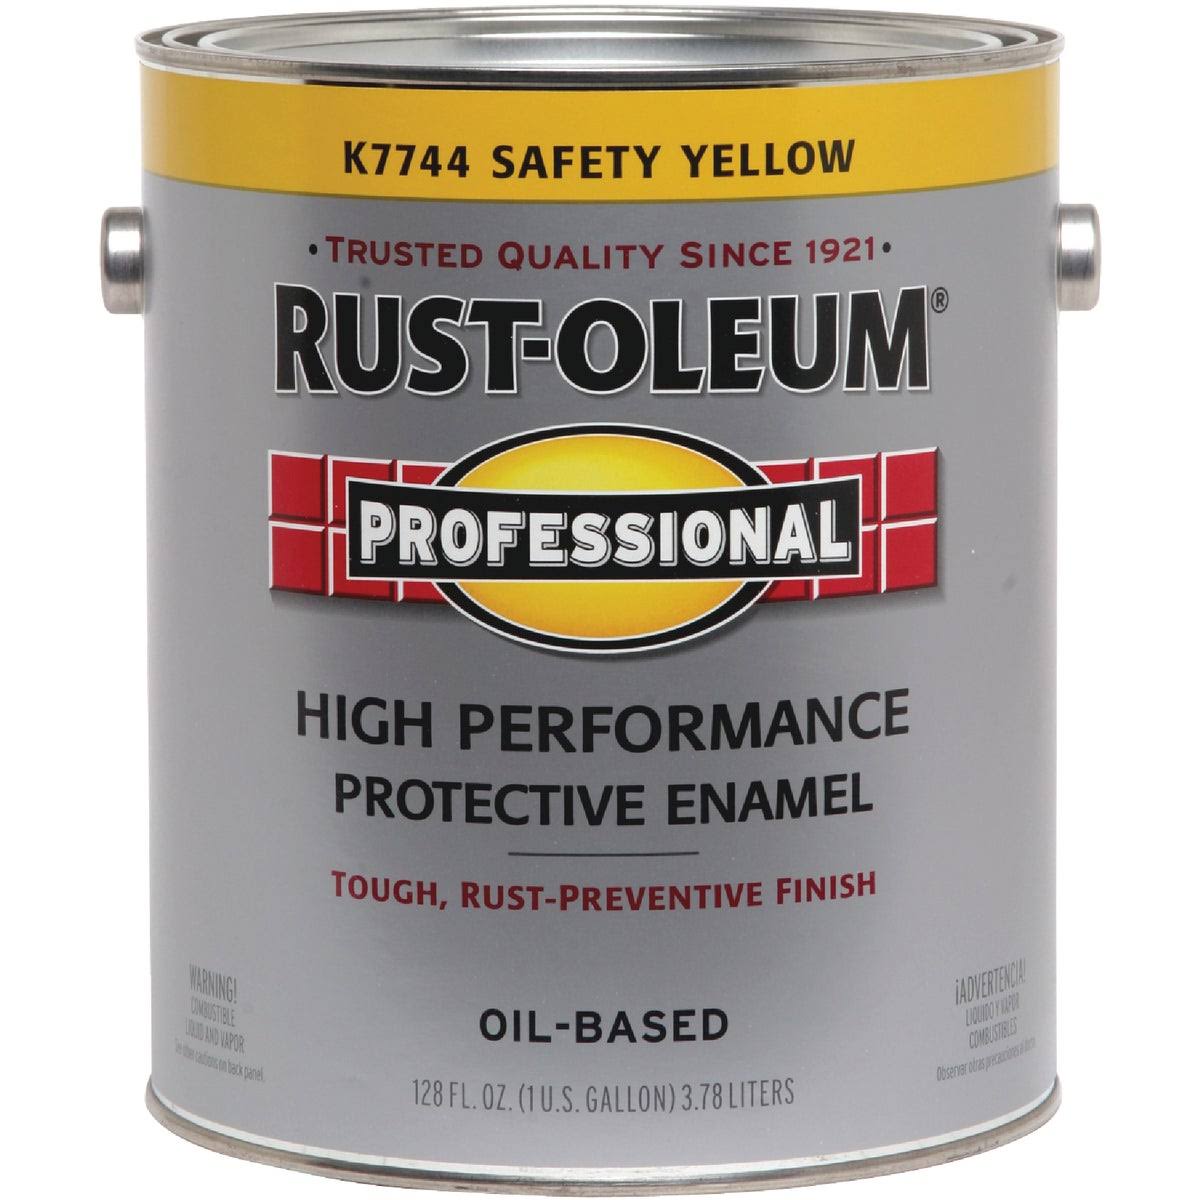 Rust Oleum K7744 VOC Compliant Rust Control Enamel Paint - Safety Yellow